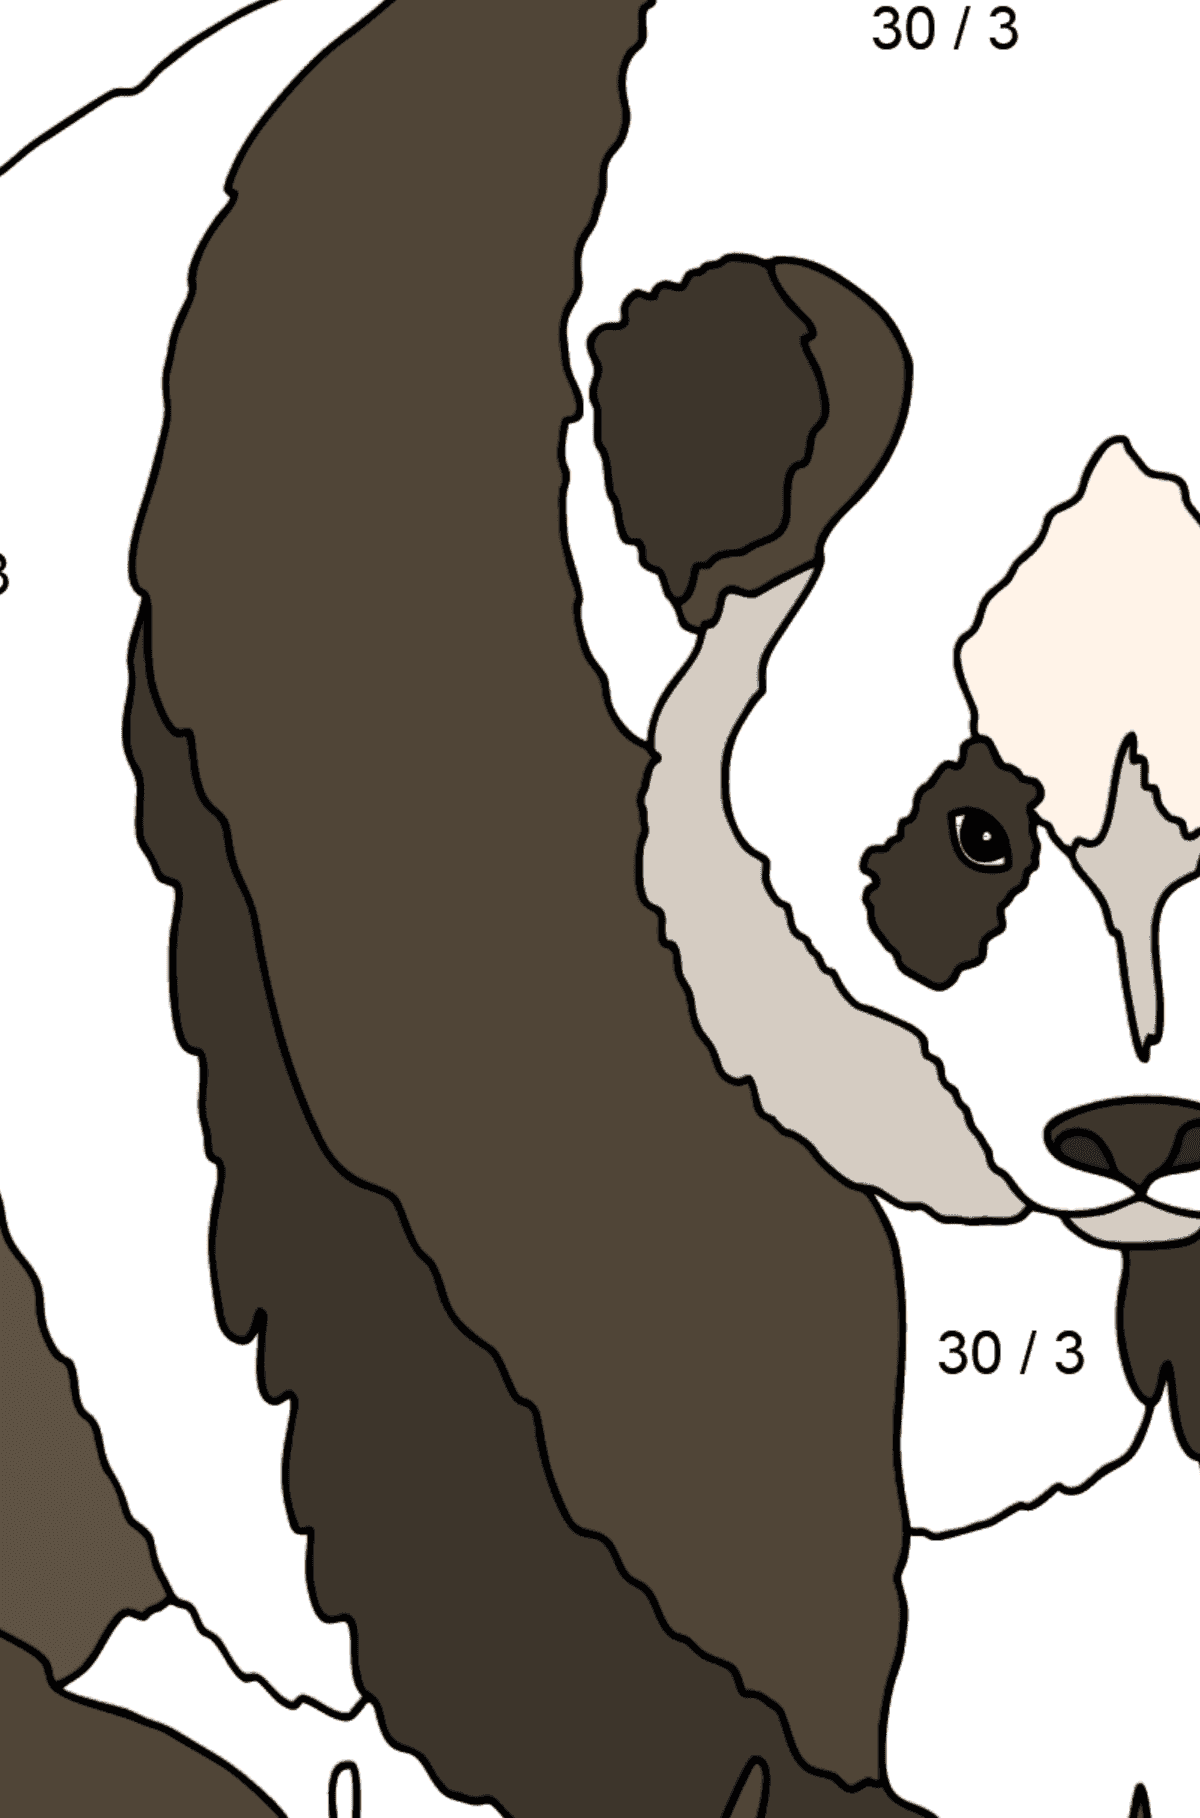 Ausmalbild zarter Panda (schwer) - Mathe Ausmalbilder - Division für Kinder